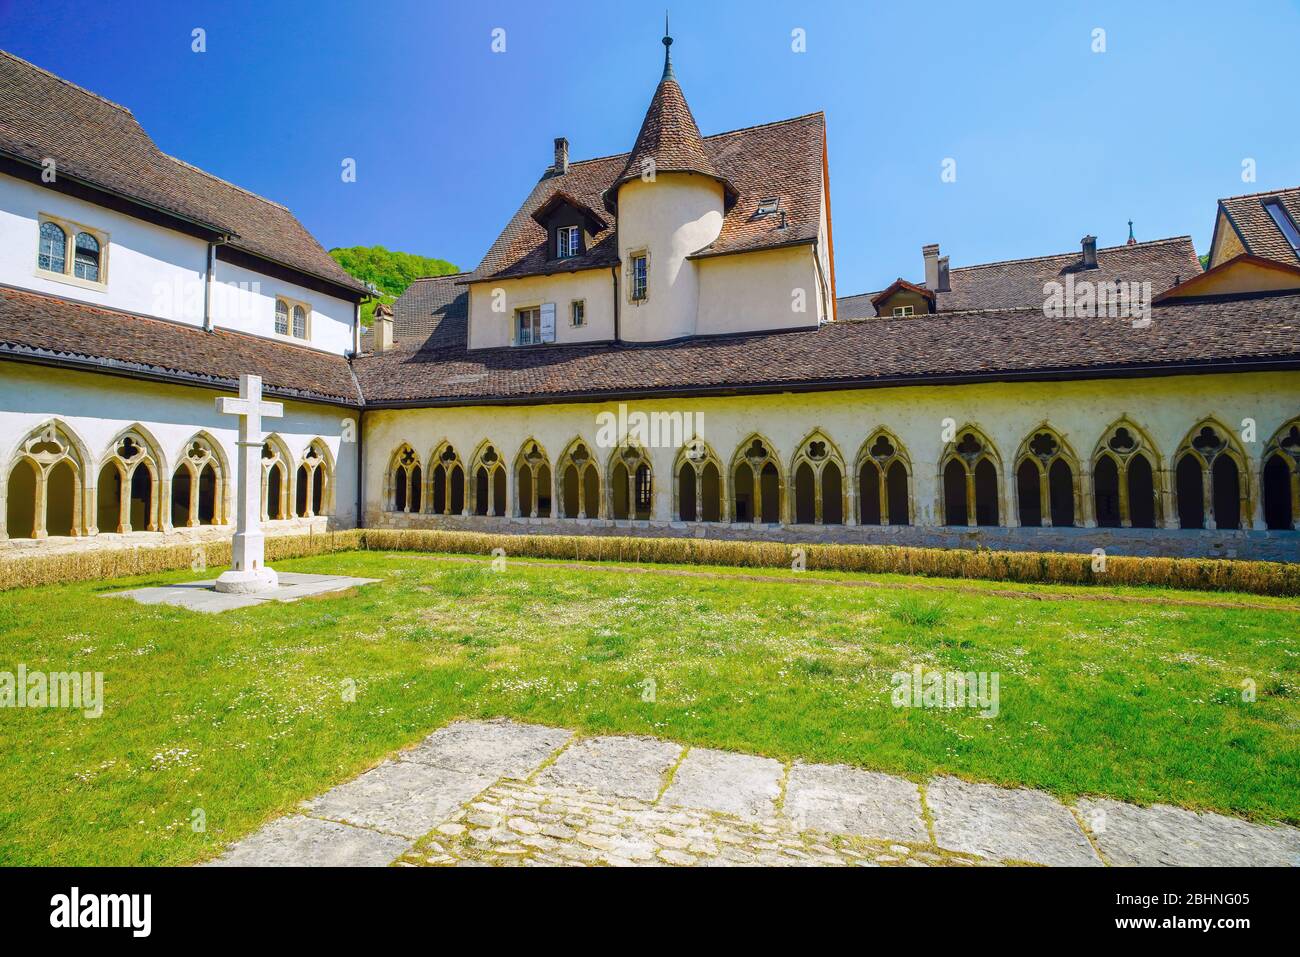 La collégiale INSDE Saint Ursanne et son cloître dans la charmante ville médiévale de Saint Ursanne, canton Jura, Suisse. Banque D'Images